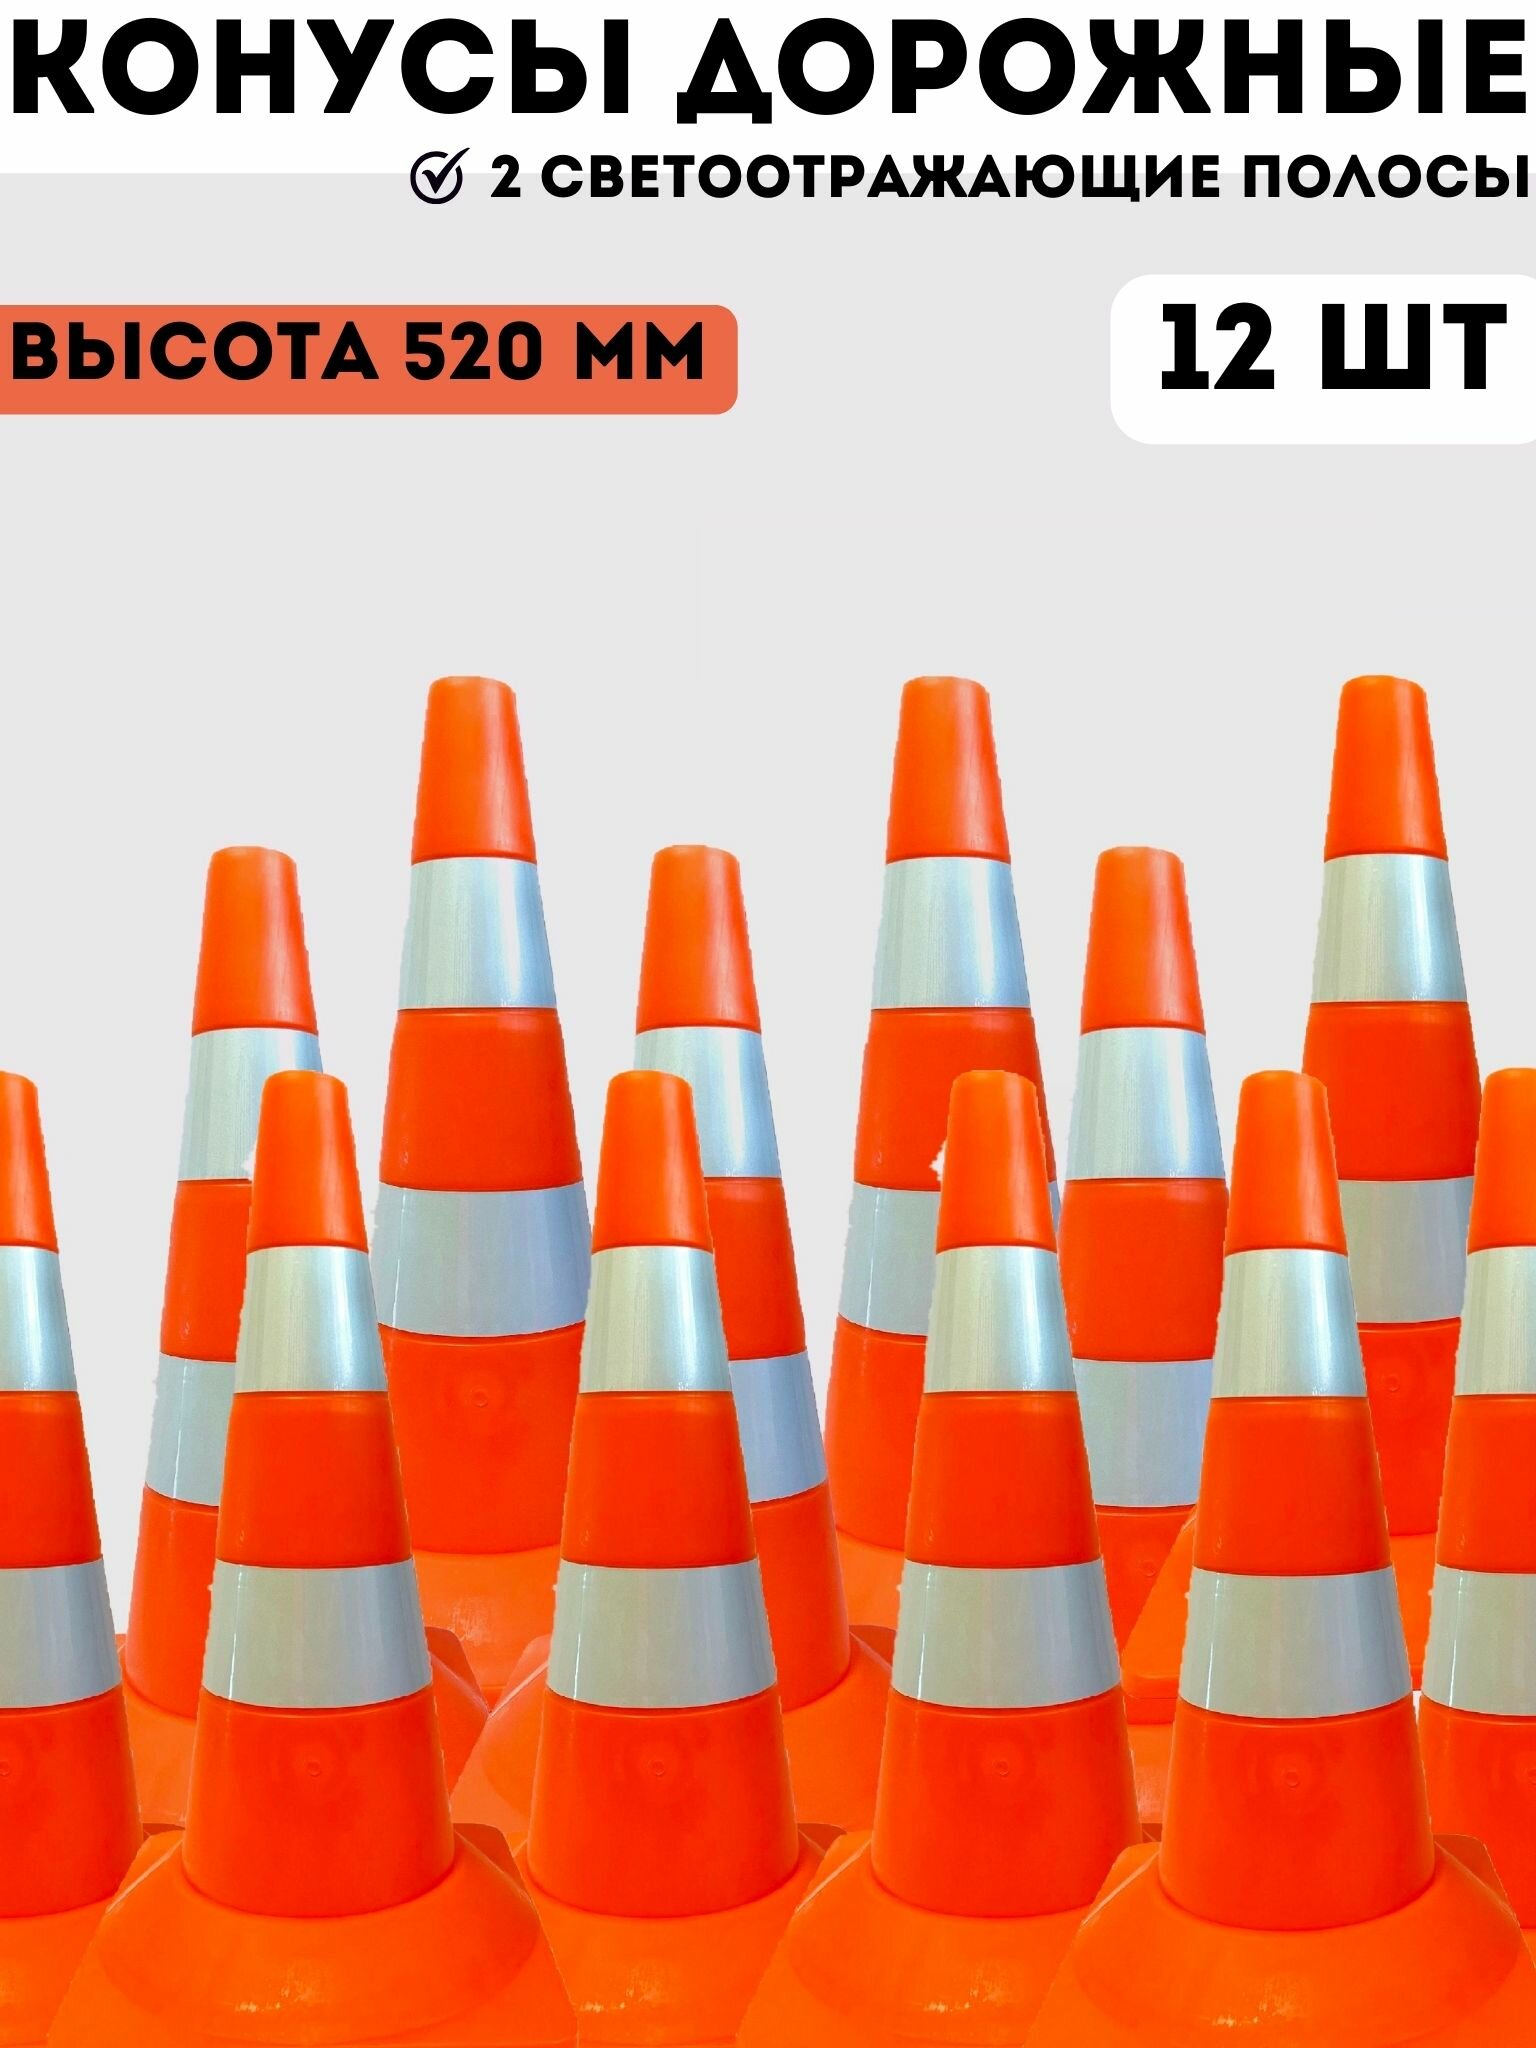 Конусы дорожные сигнальные пластиковые оранжевые с 2 светоотражающими полосами 520 мм, набор конусов 12 шт